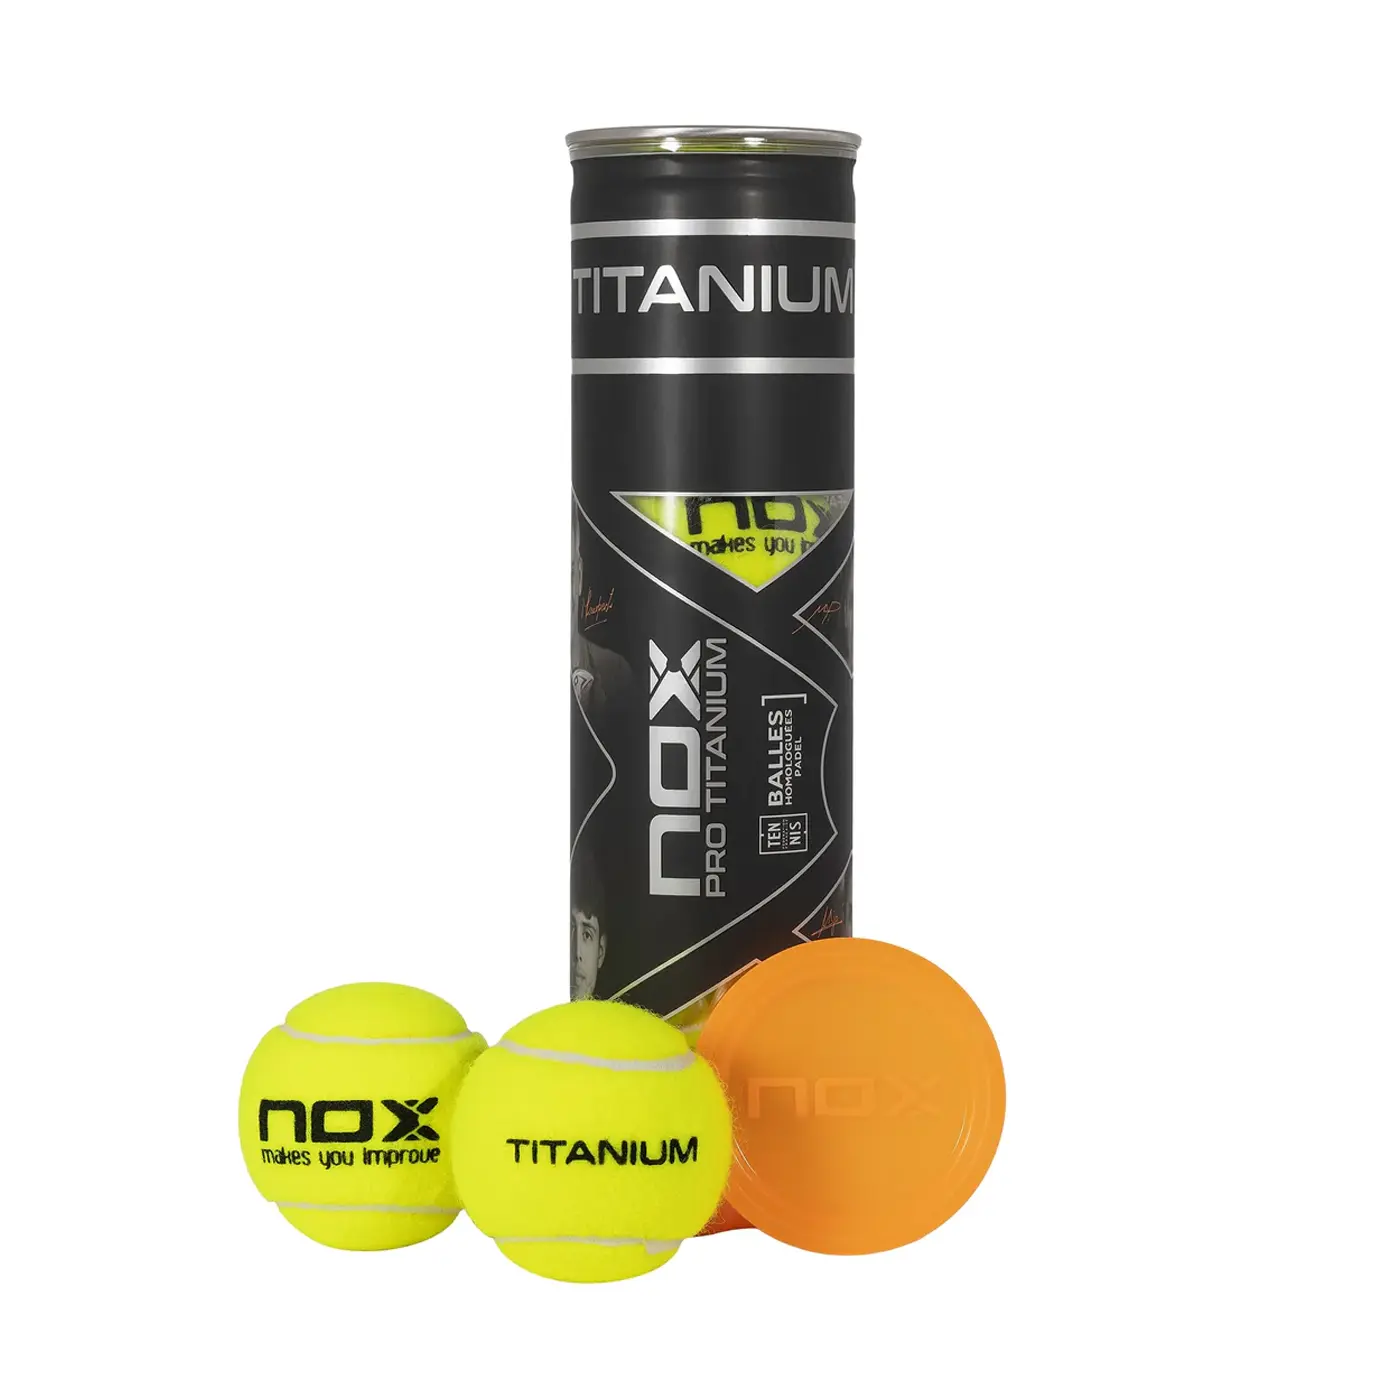 NOX Padel Balls Pro Titanium, Best Padel Balls